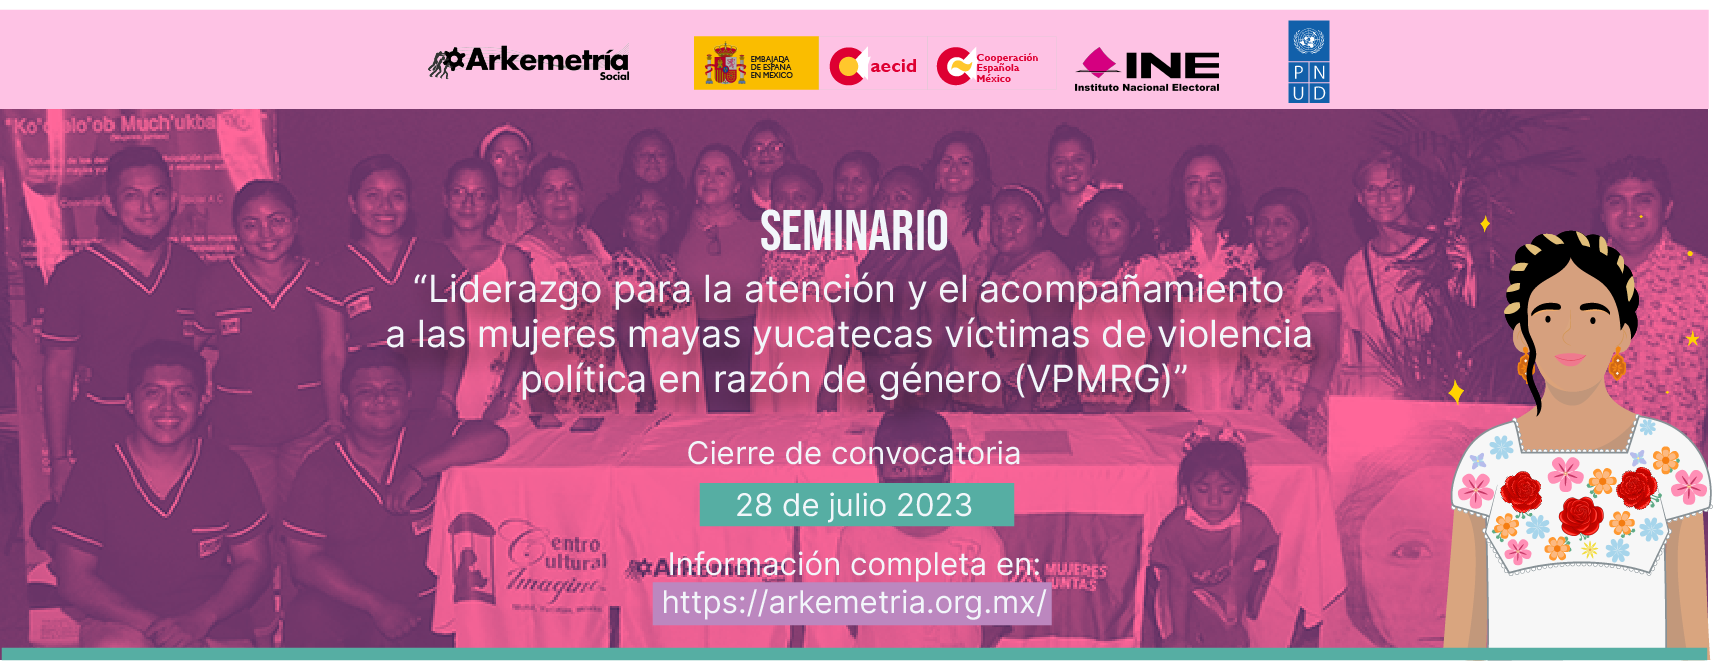 Seminario de “Liderazgo para la atención y el acompañamiento a las mujeres mayas yucatecas víctimas de violencia política en razón de género”